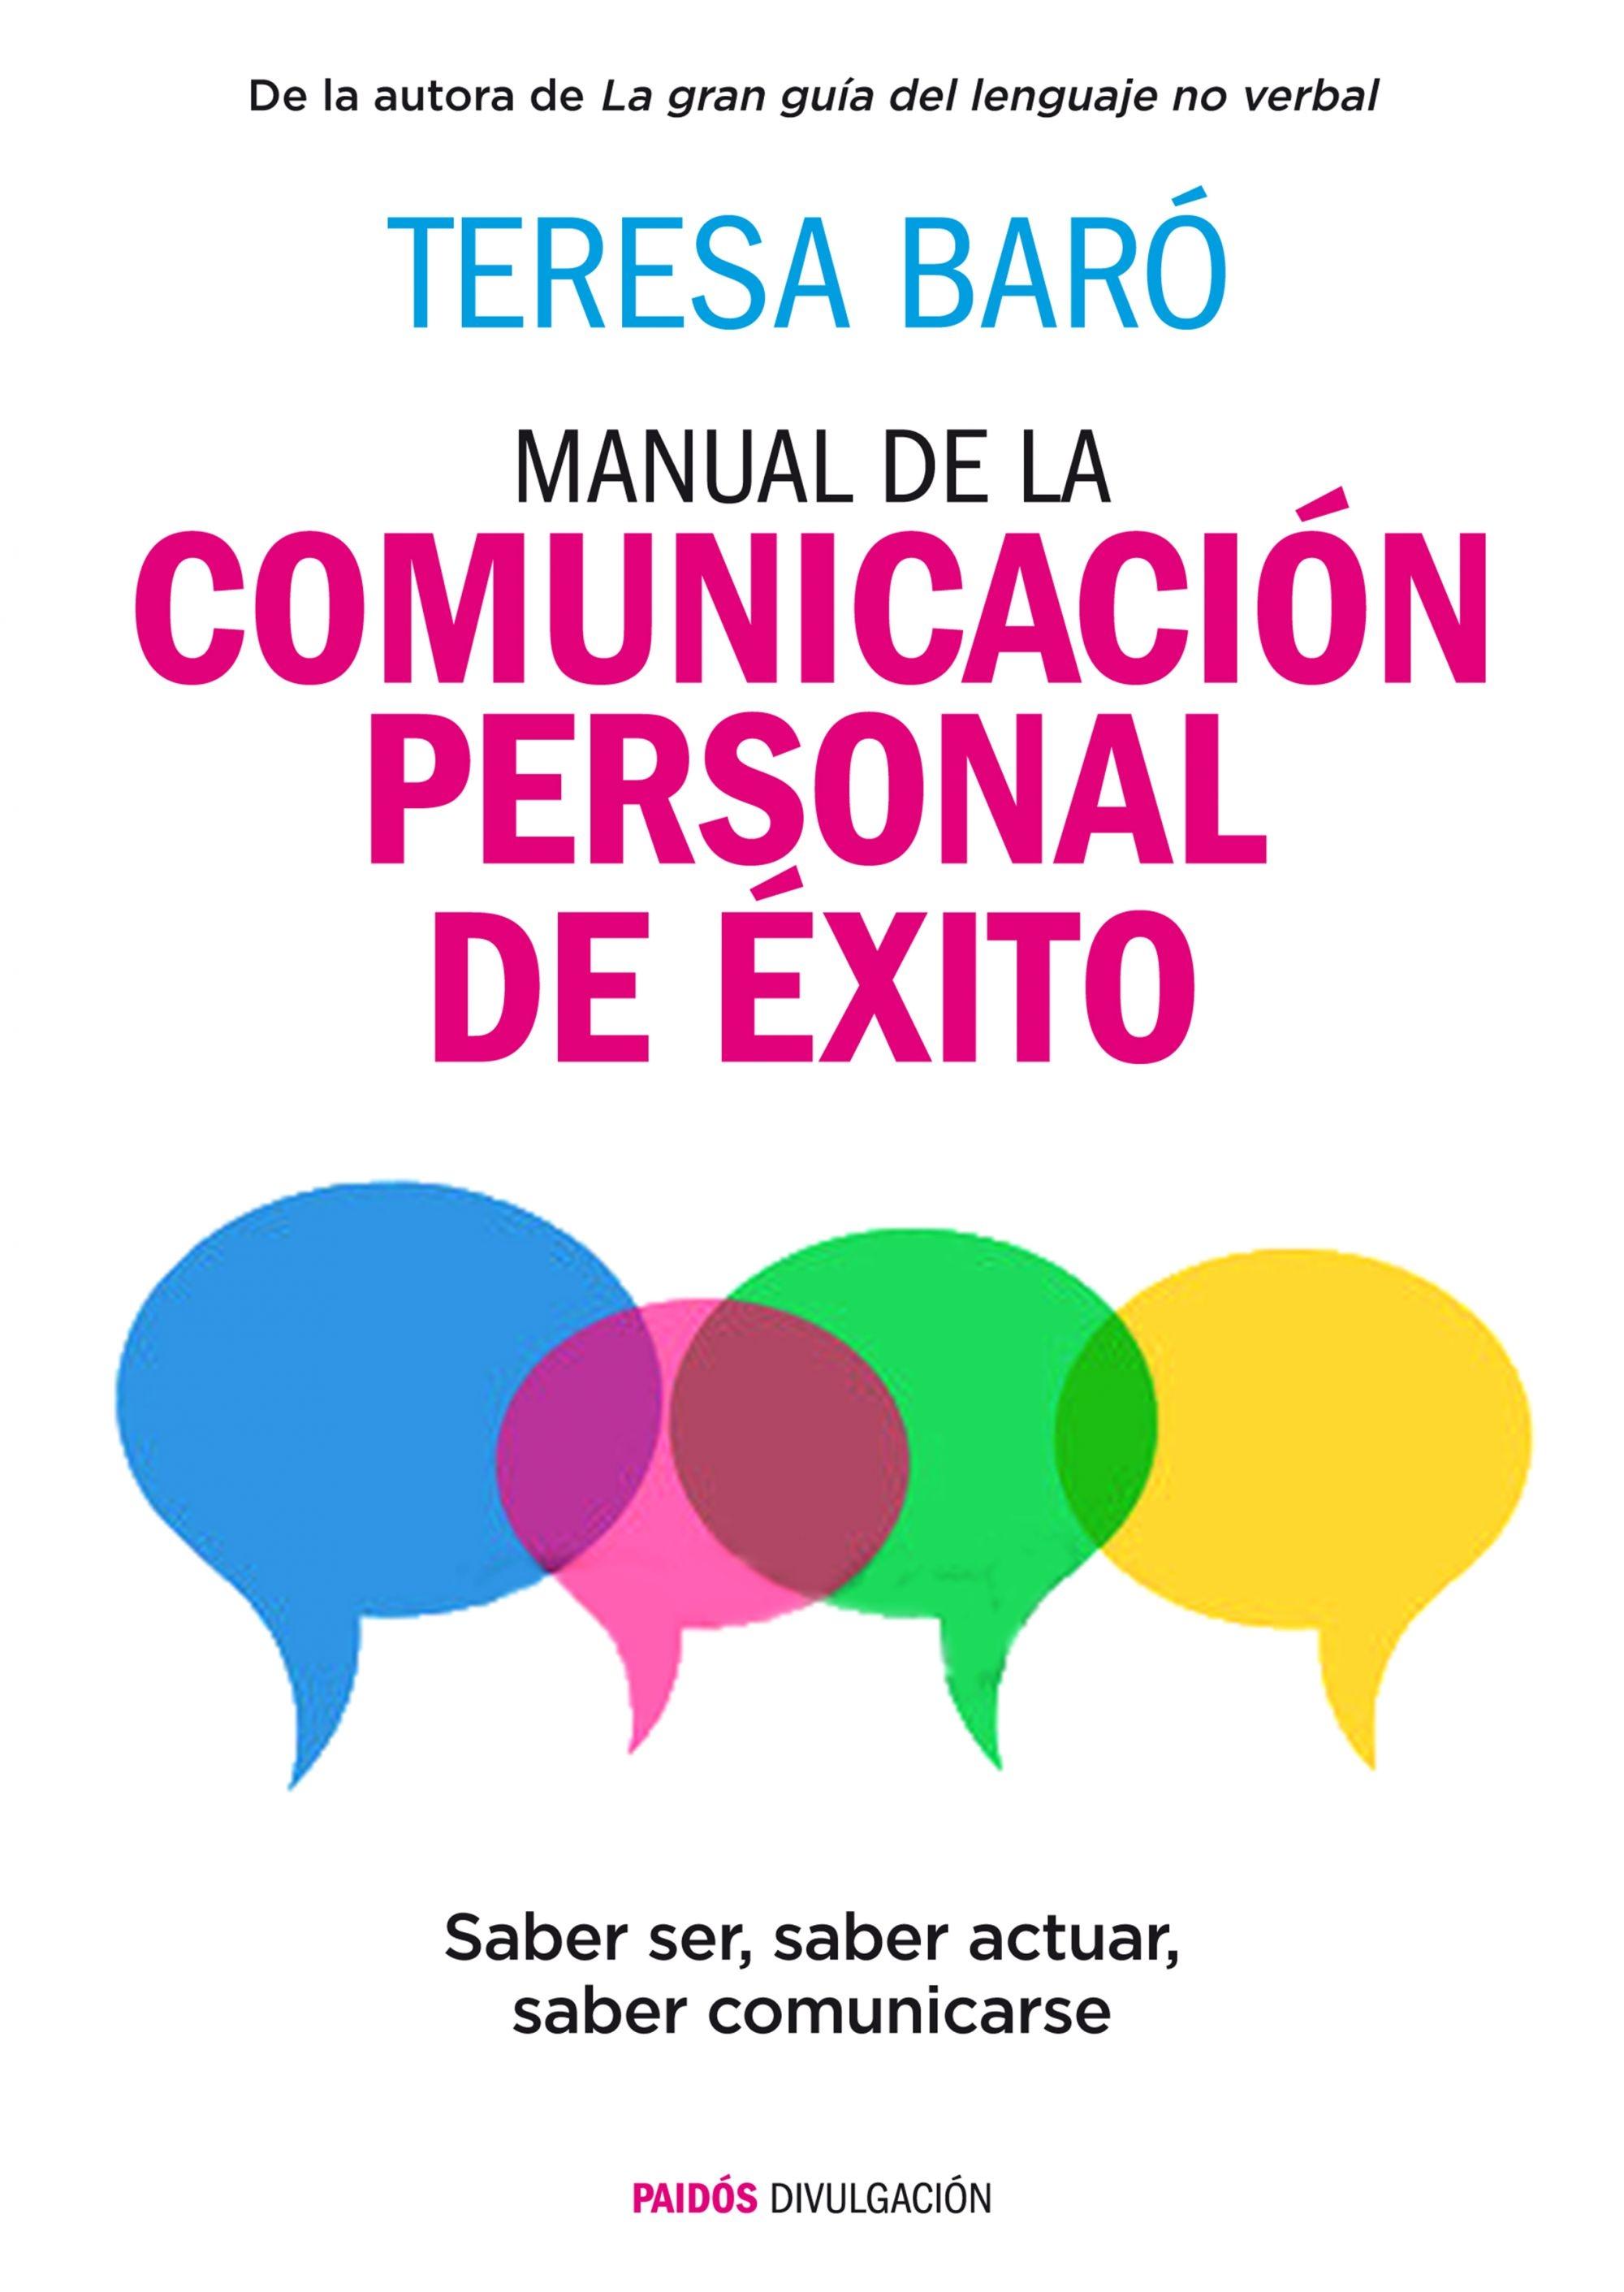 Manual de la comunicación personal de éxito "Saber ser, saber actuar, saber comunicarse"